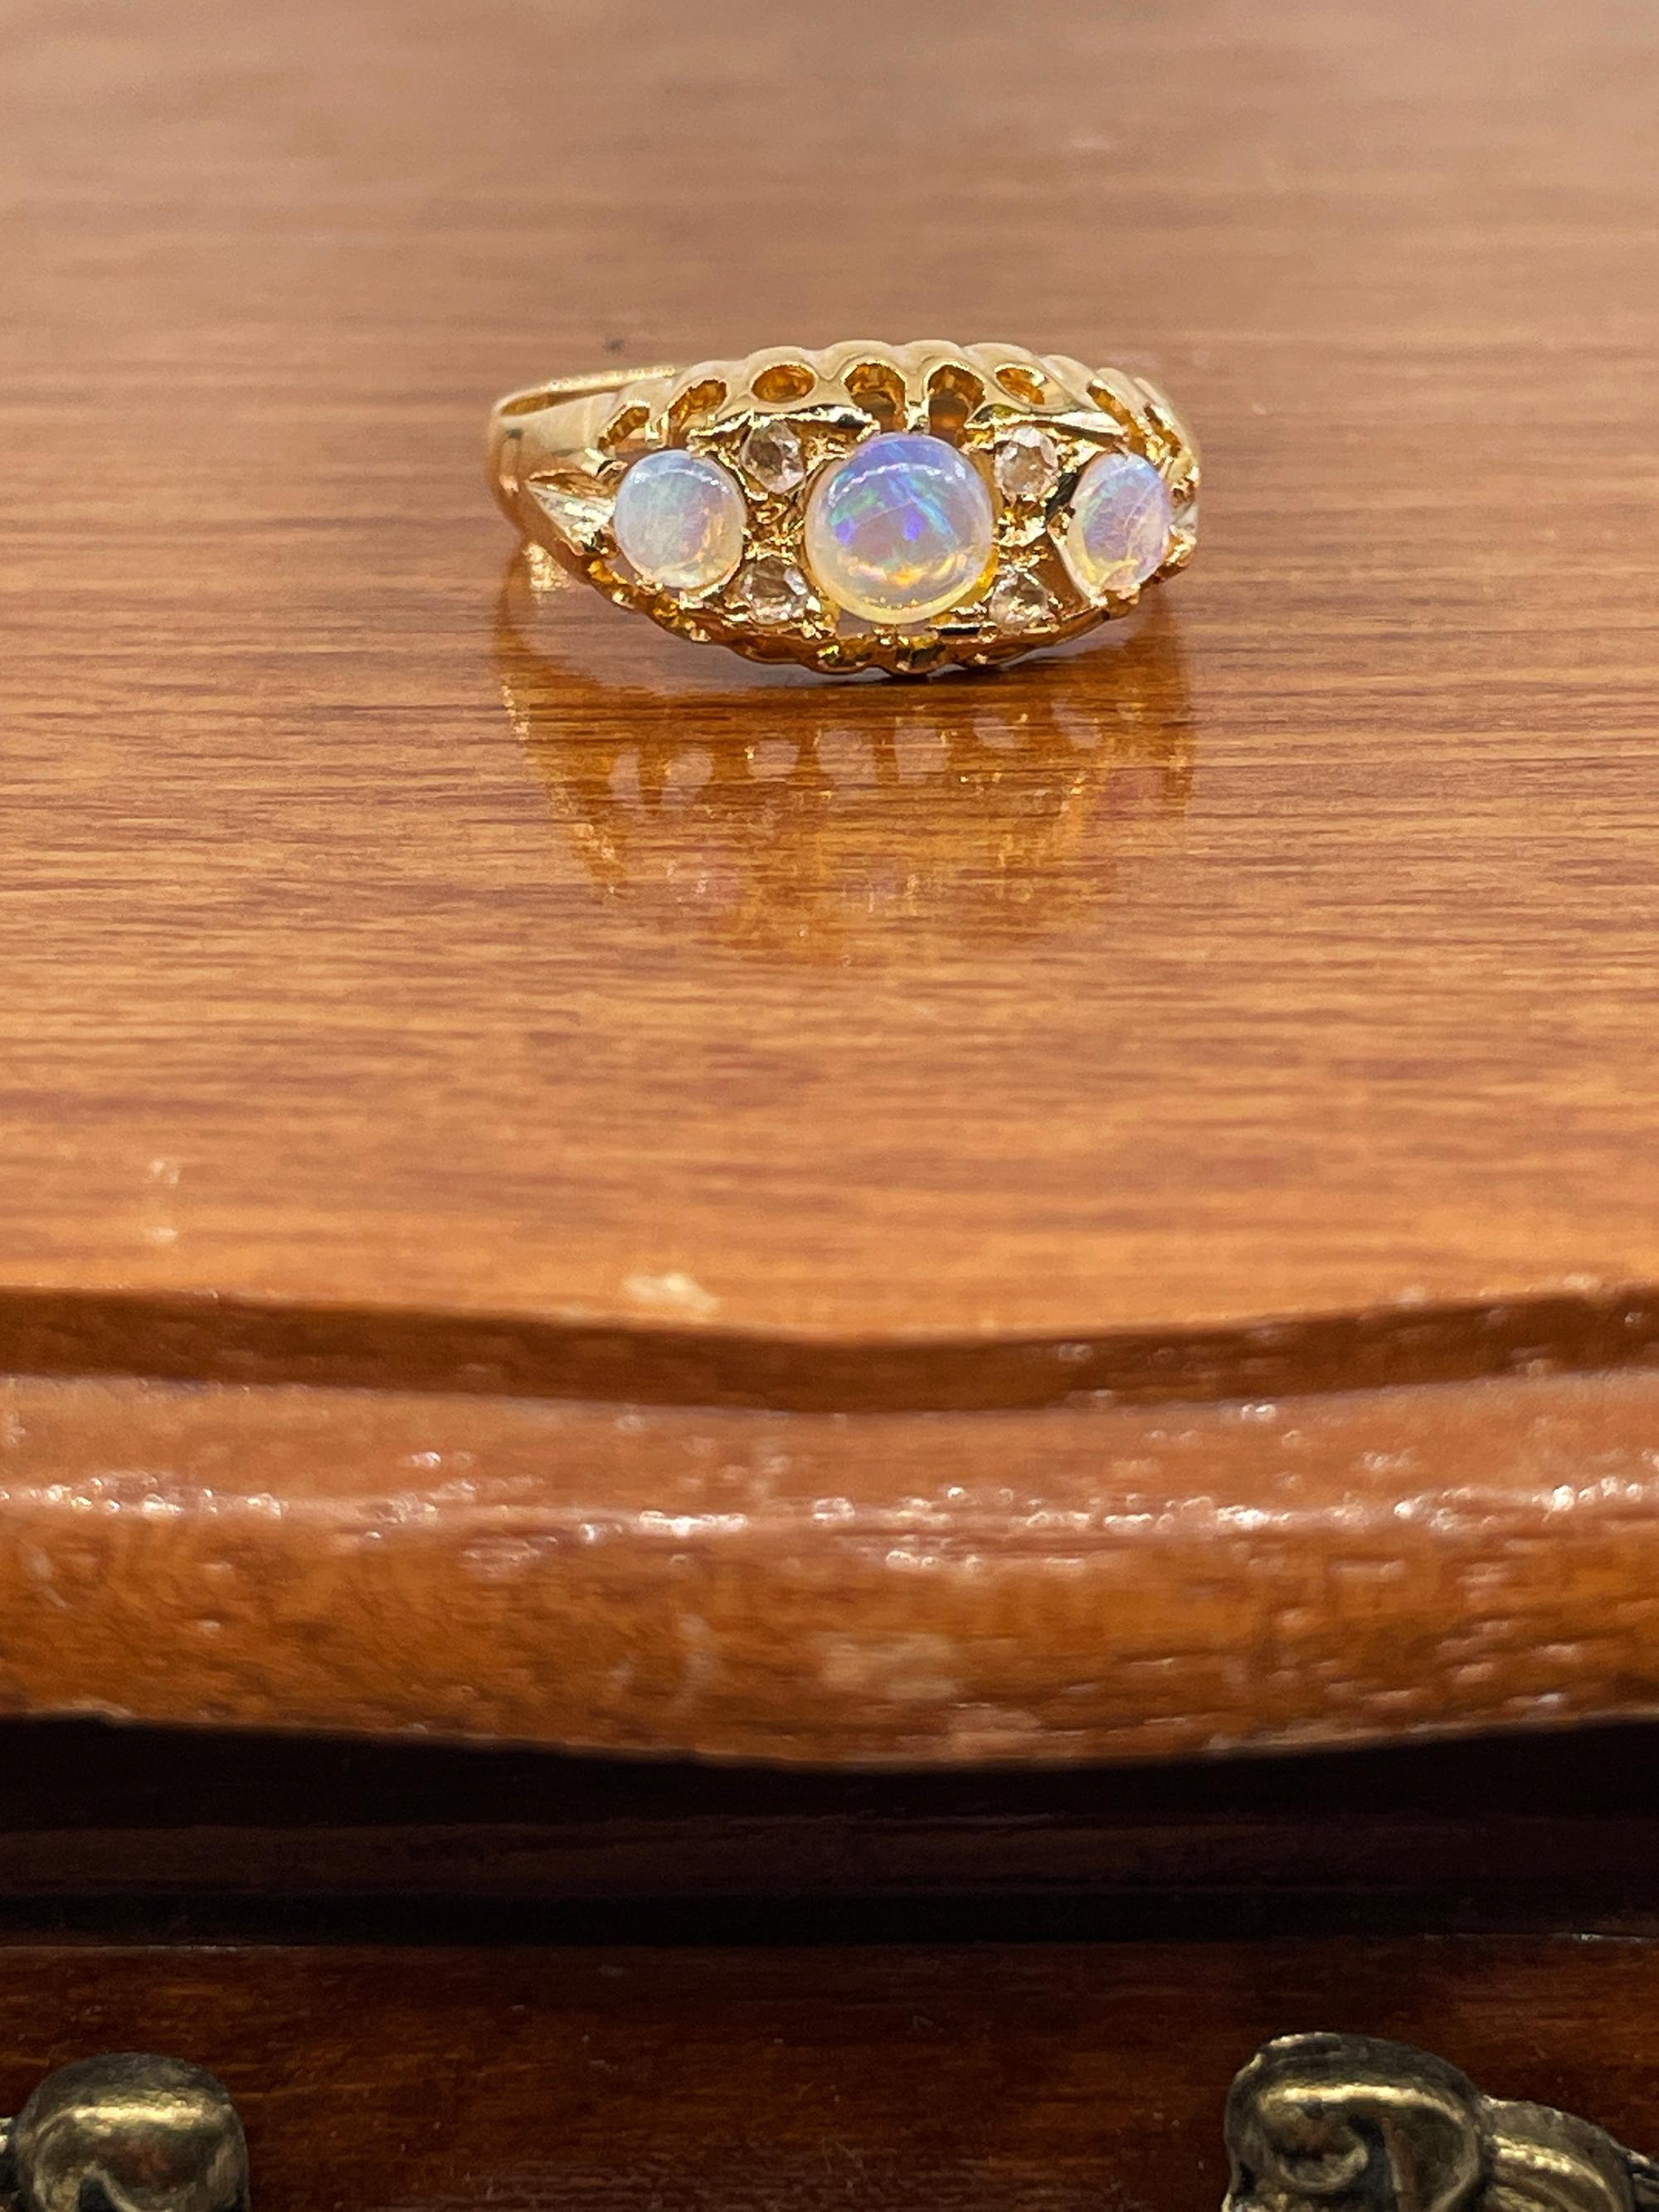 English 1894 Victorian 3 Stone Antique Opal & Diamond Wedding Anniversary Band 18K Gold Ring
AUTHENTIQUE bague victorienne anglaise en OPALE et DIAMANT à 3 pierres, conçue comme un cabochon circulaire gradué d'opale et des diamants de taille